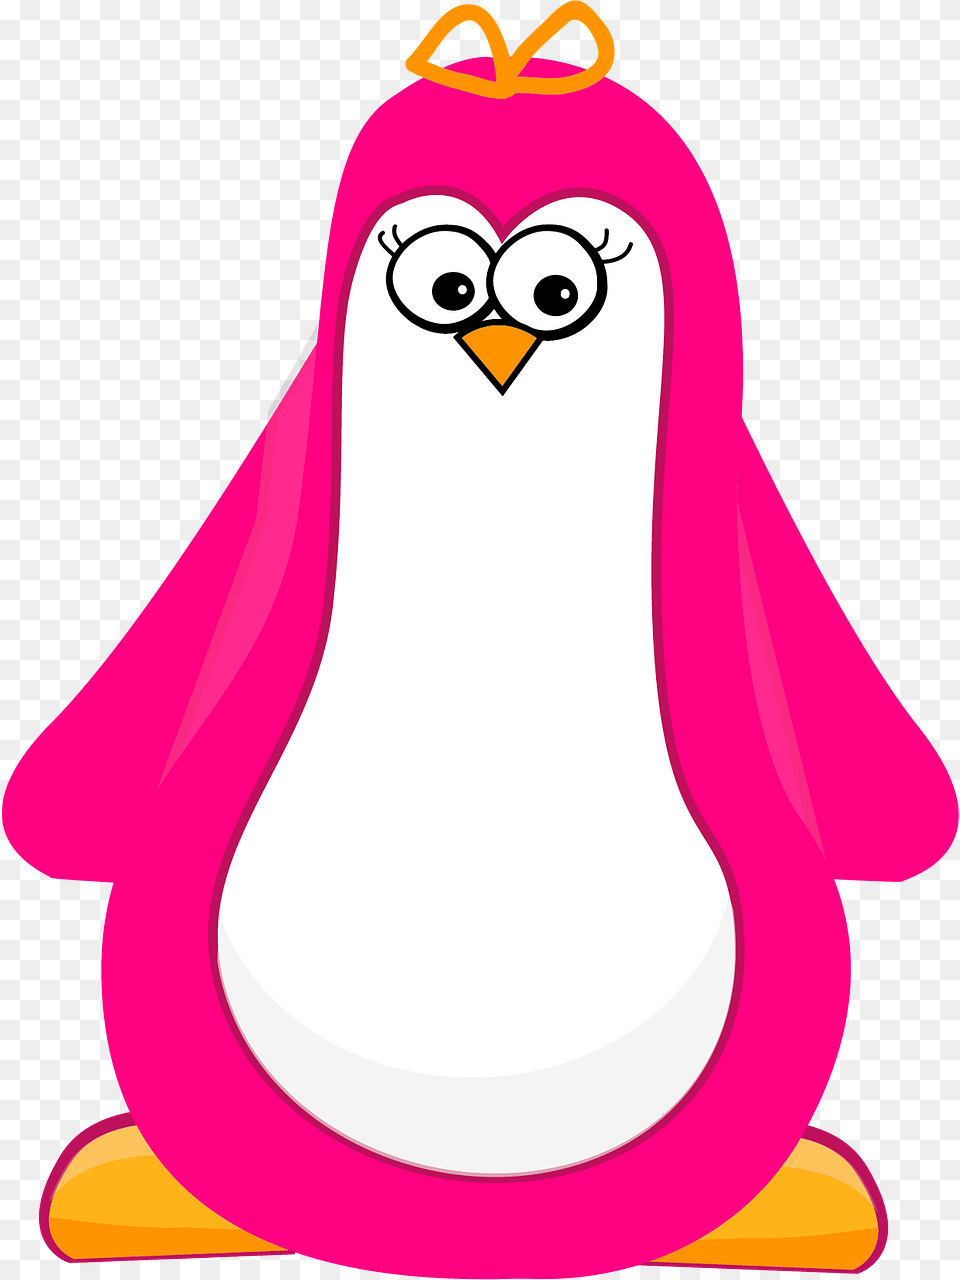 Pink Cartoon Penguin Clipart, Bag, Animal, Bird Free Transparent Png